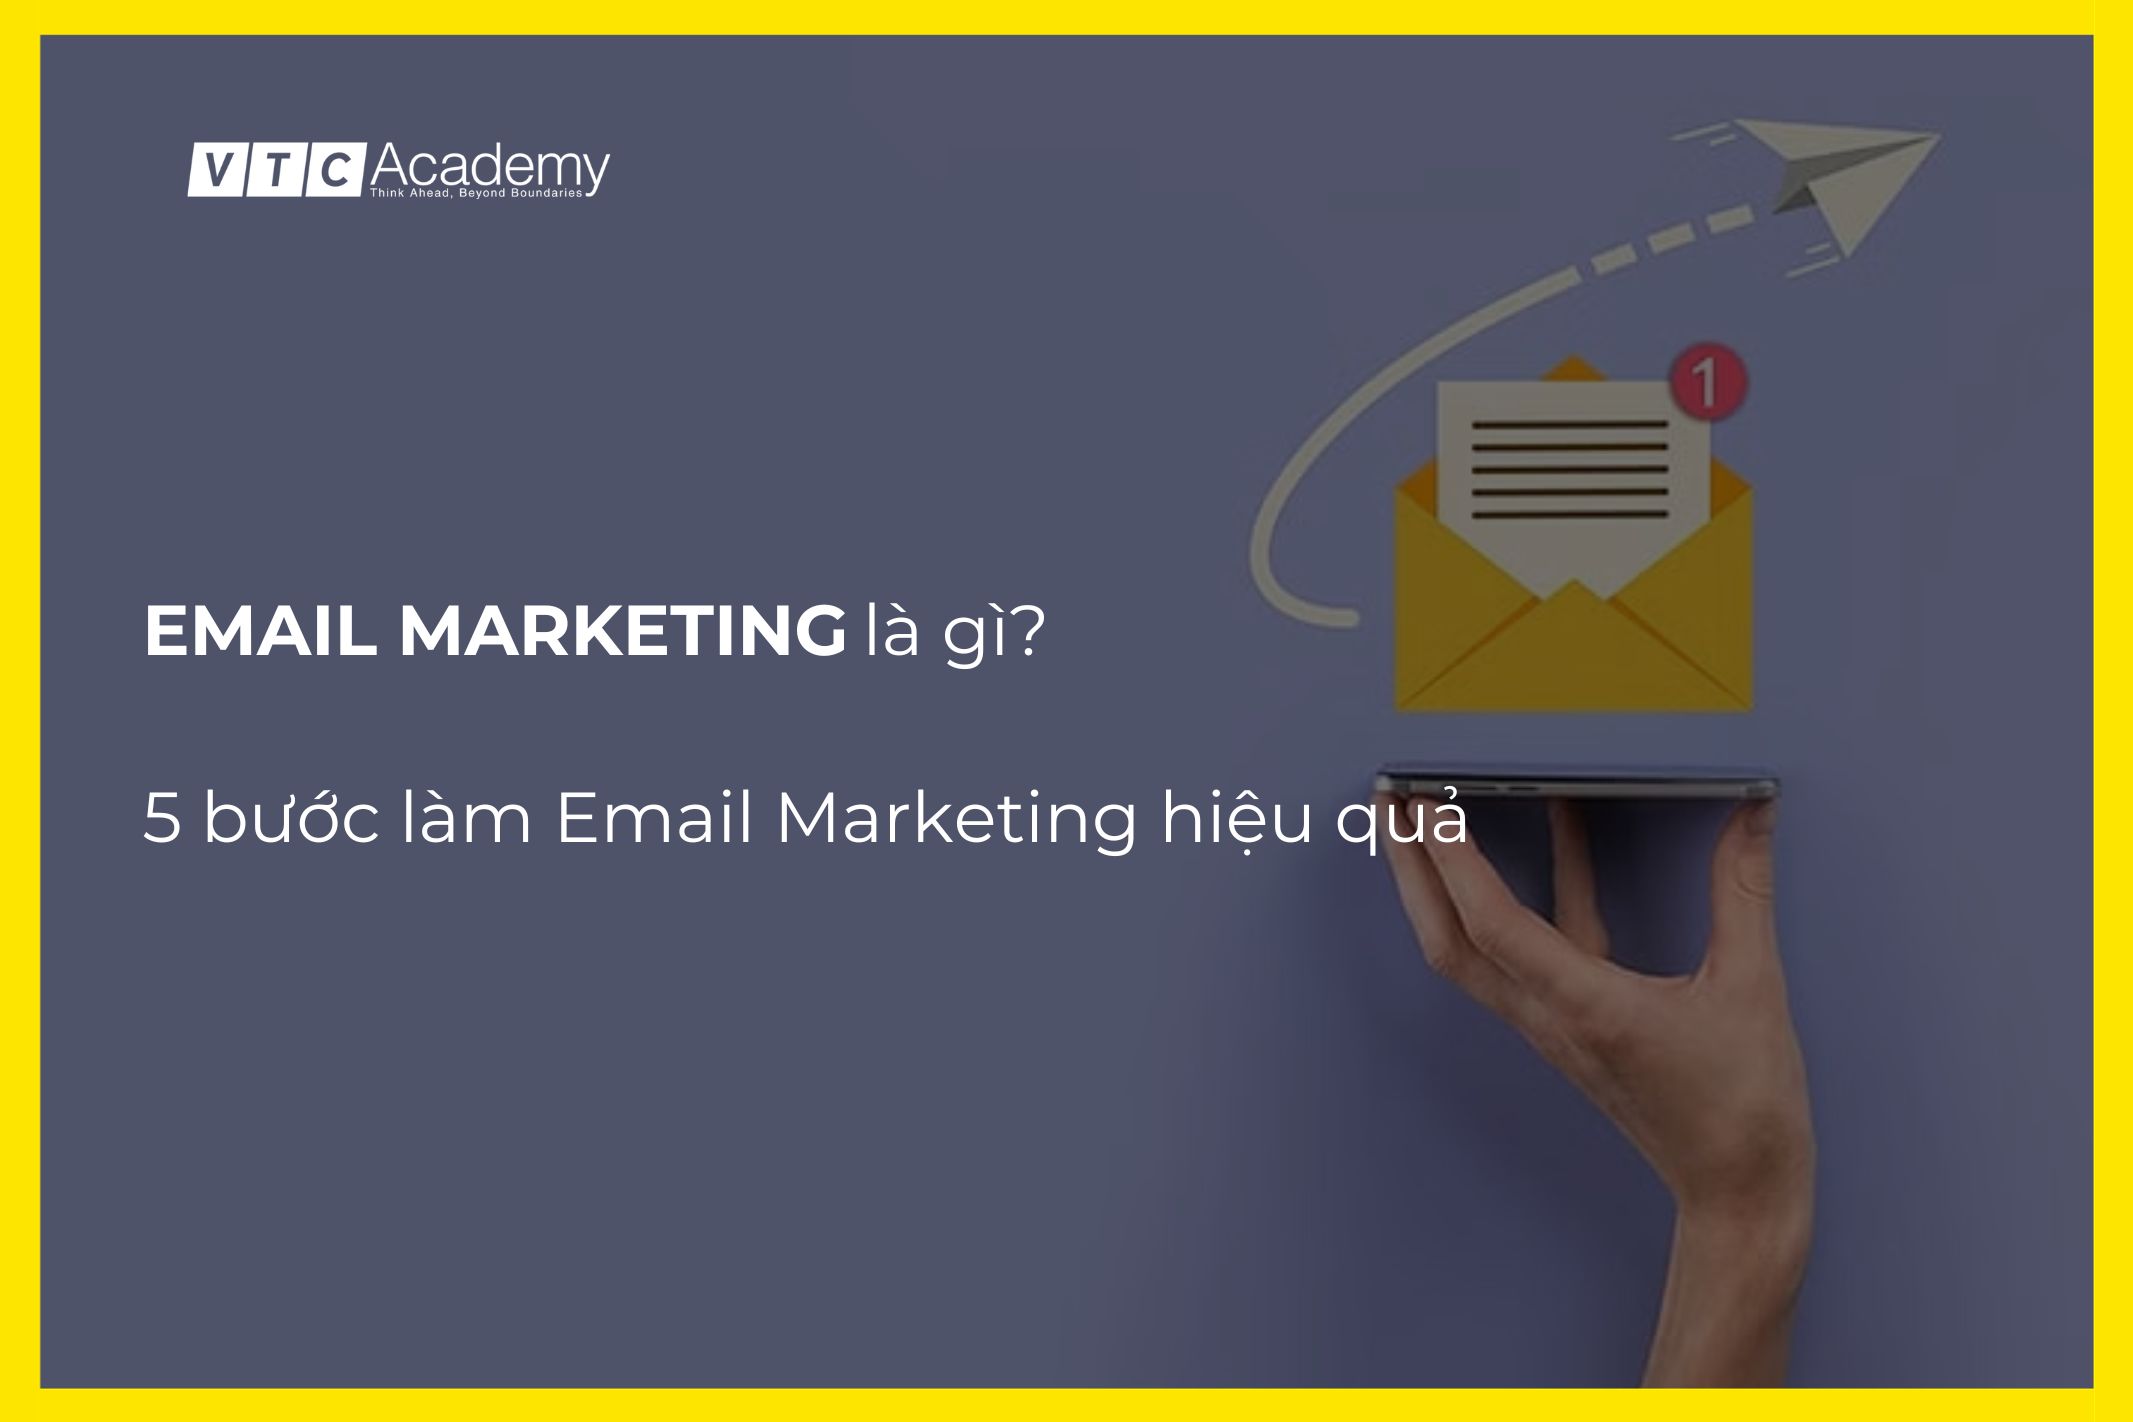 Email Marketing là gì? 5 bước làm Email Marketing hiệu quả cho doanh nghiệp